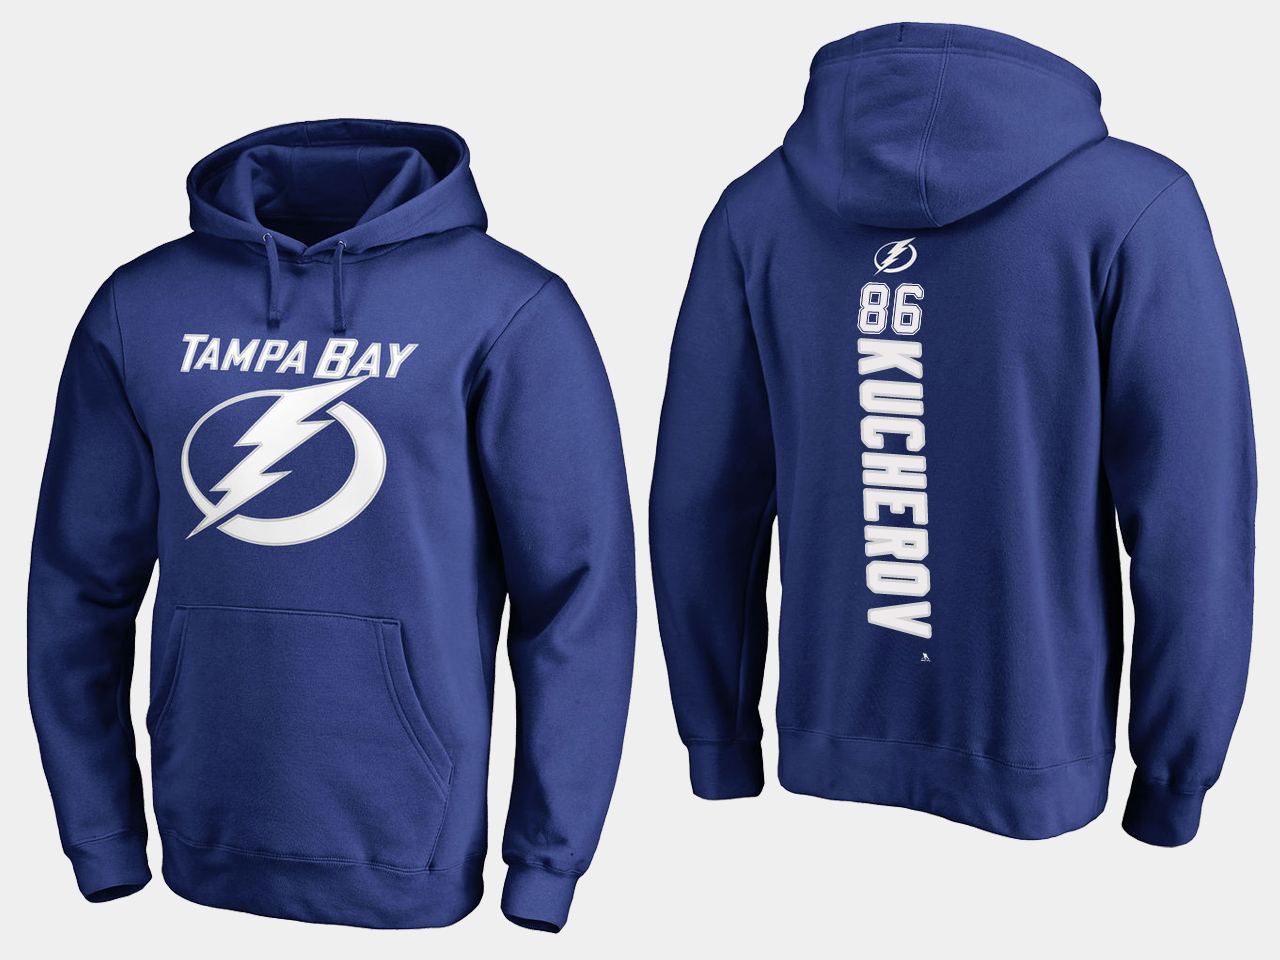 NHL Men adidas Tampa Bay Lightning 86 Kucherov blue hoodie